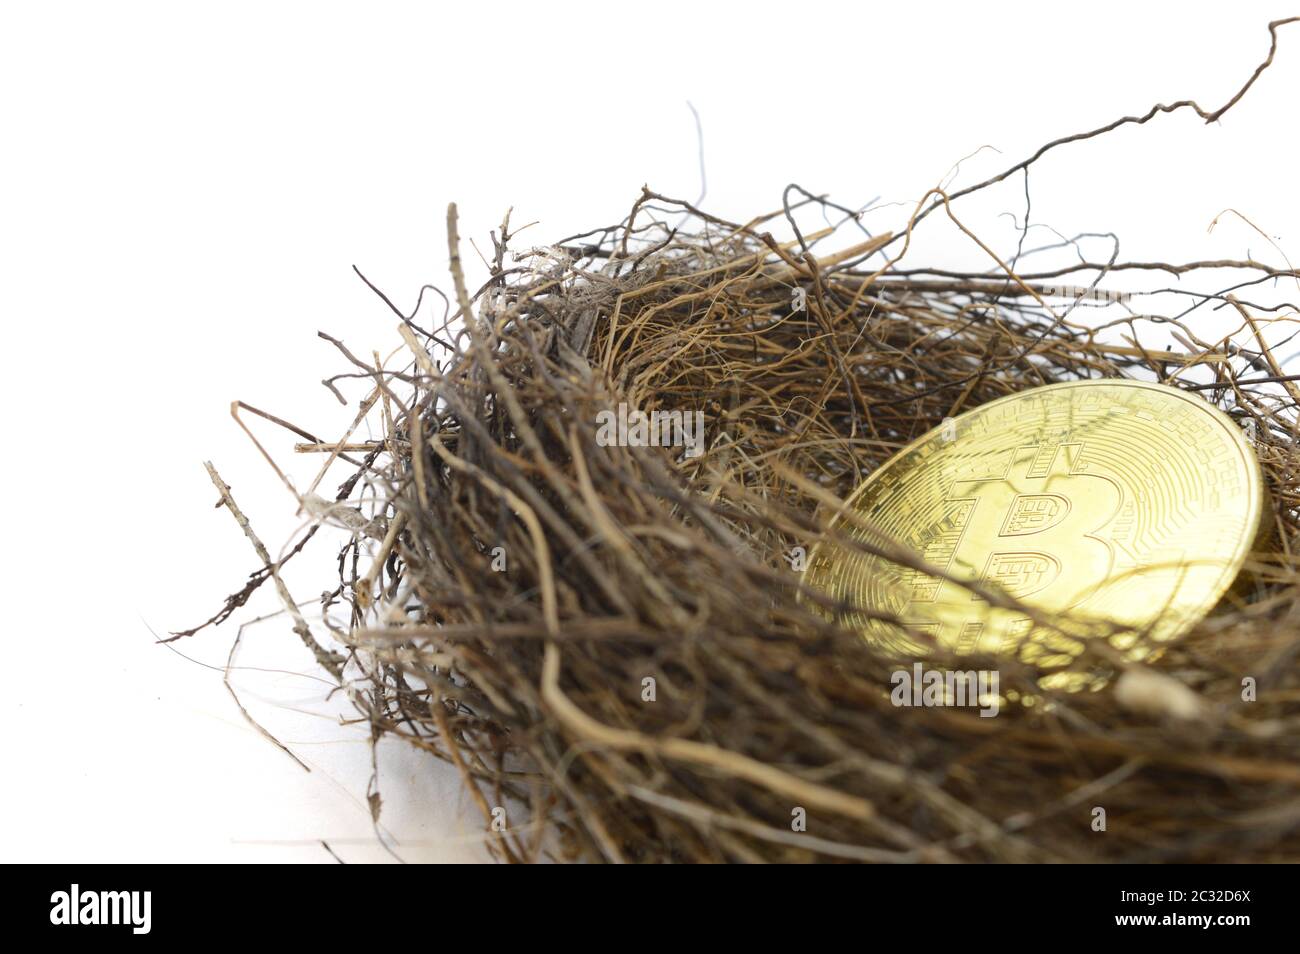 Un concetto basato su investimenti a lungo termine della criptovaluta Bitcoin utilizzando un nido di uccelli e moneta d'oro su uno sfondo bianco. Foto Stock